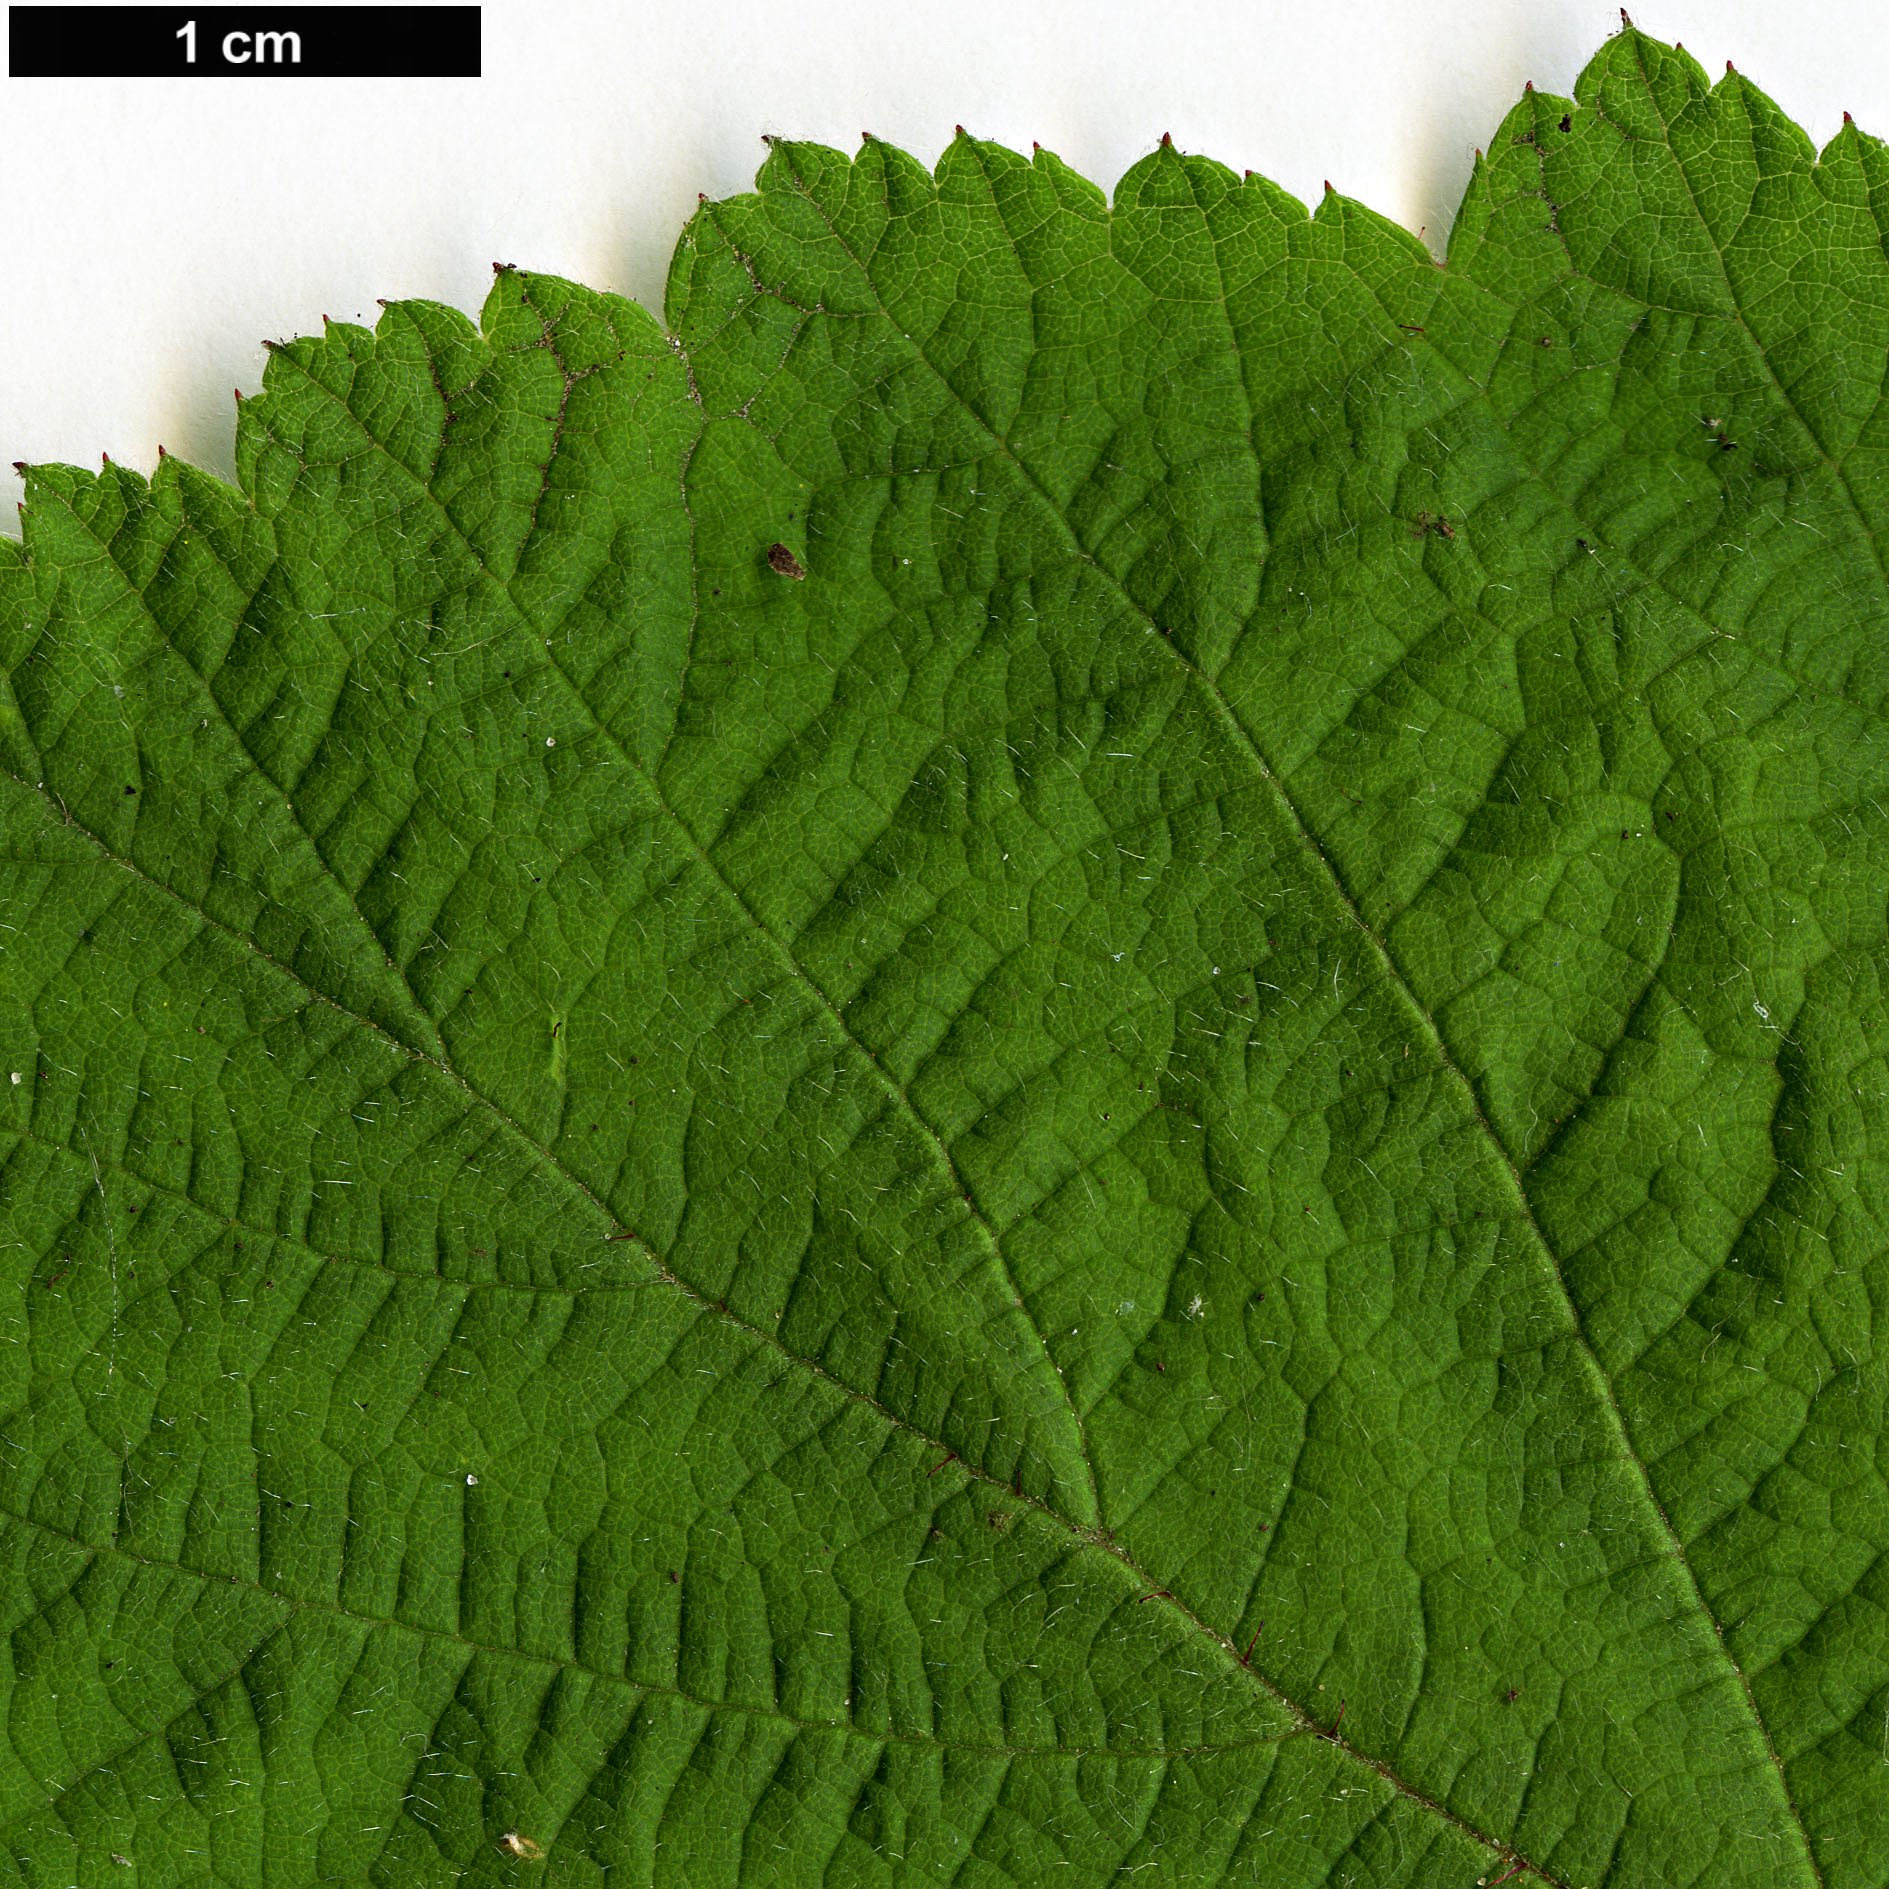 High resolution image: Family: Rosaceae - Genus: Rubus - Taxon: phoenicolasius